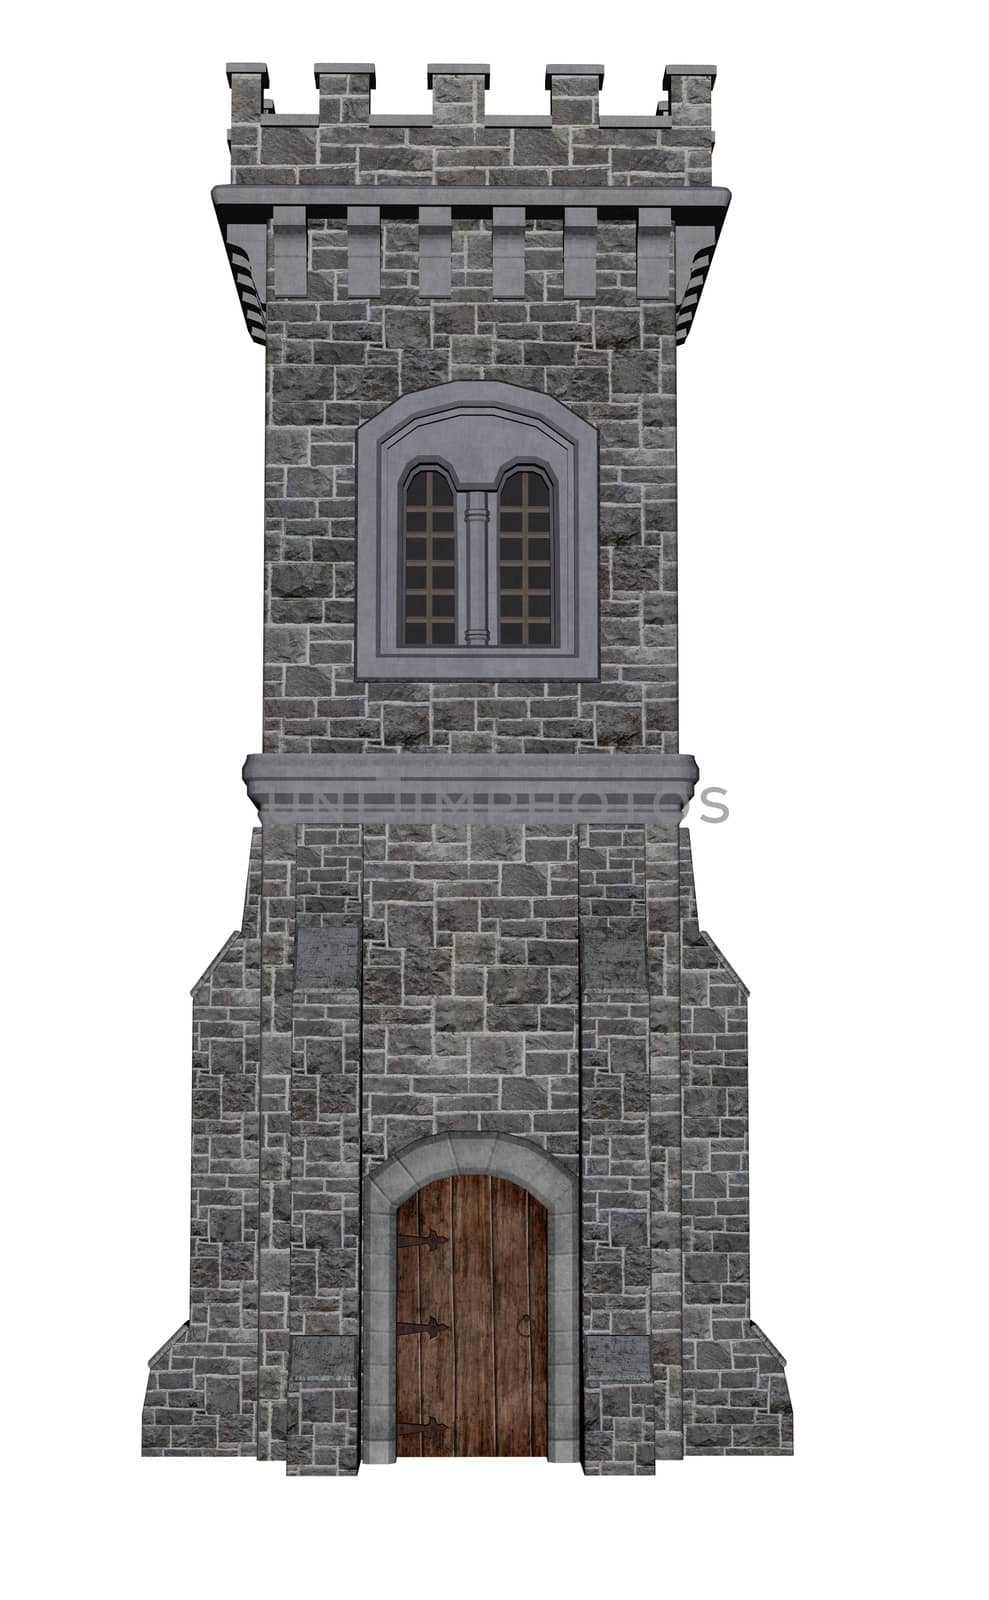 Square castle tower - 3D render by Elenaphotos21